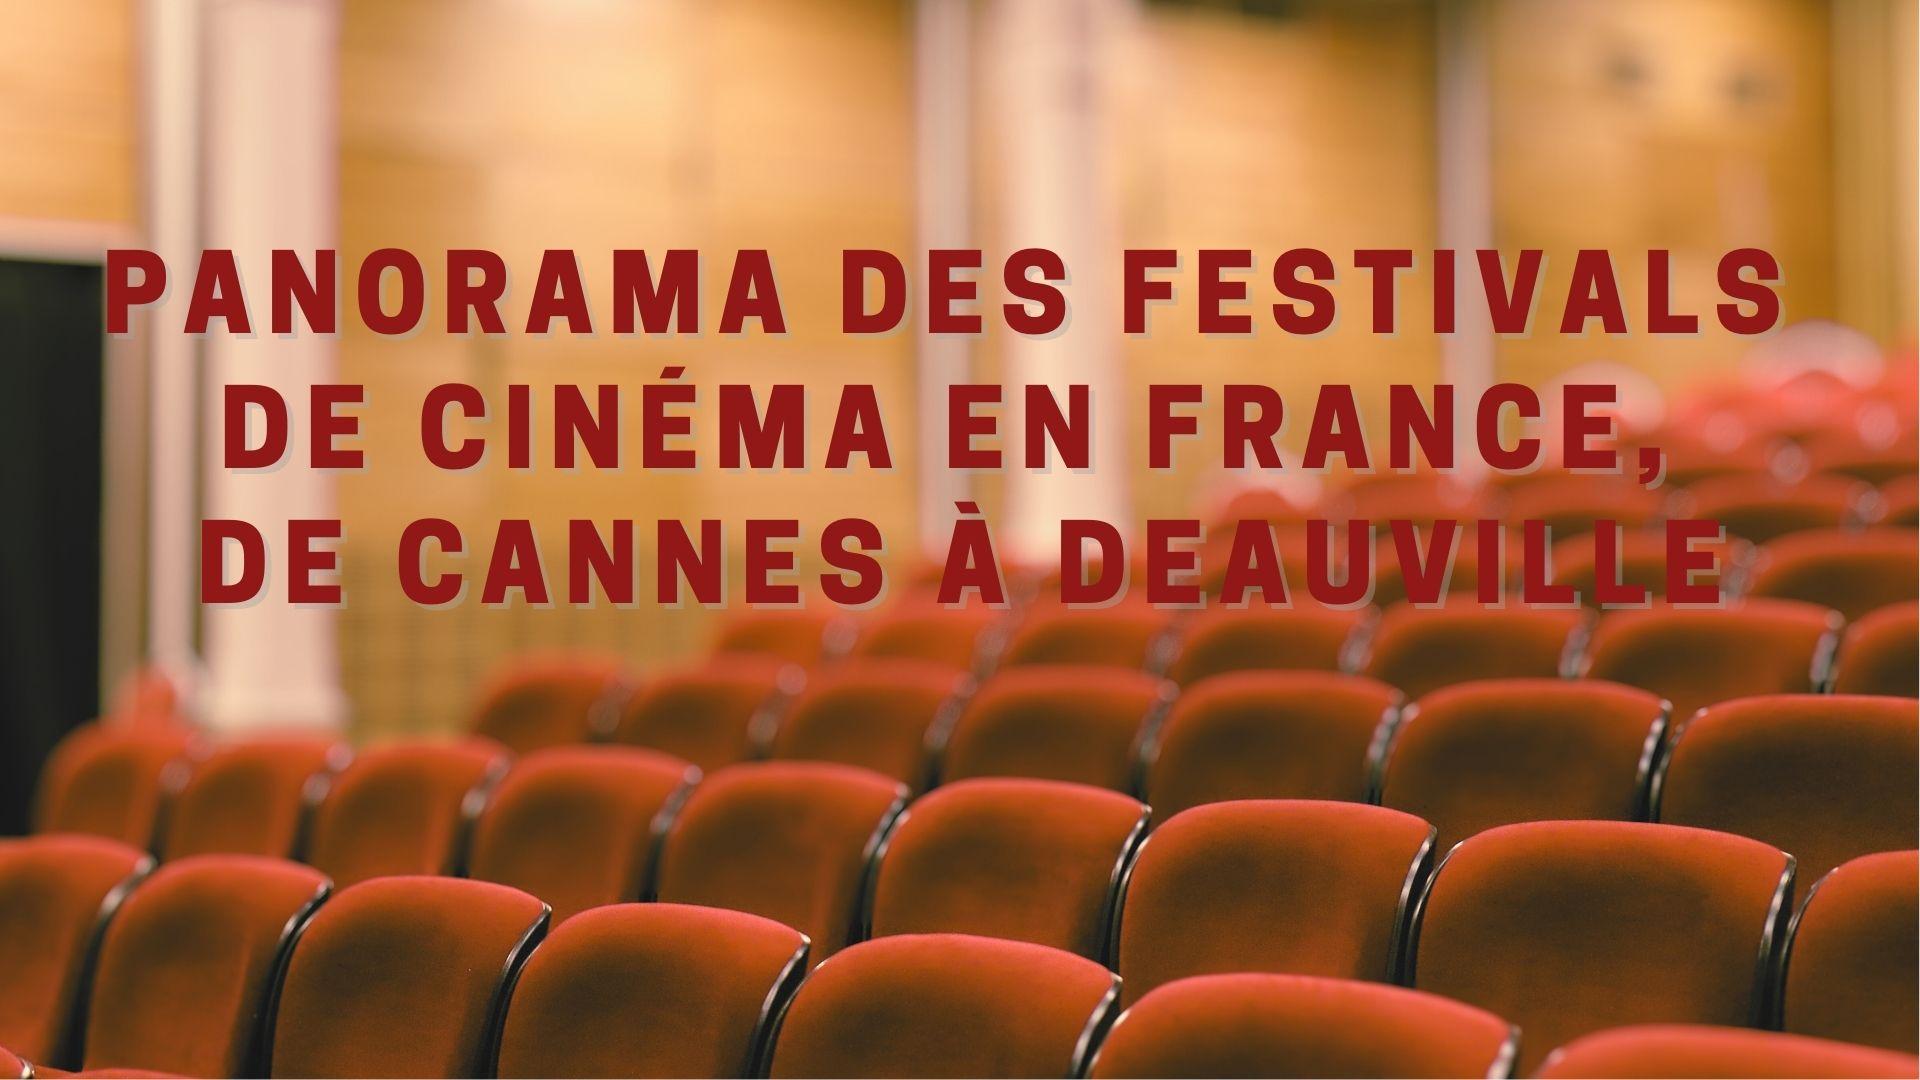 Panorama des festivals de cinema en france de cannes a deauville 2 